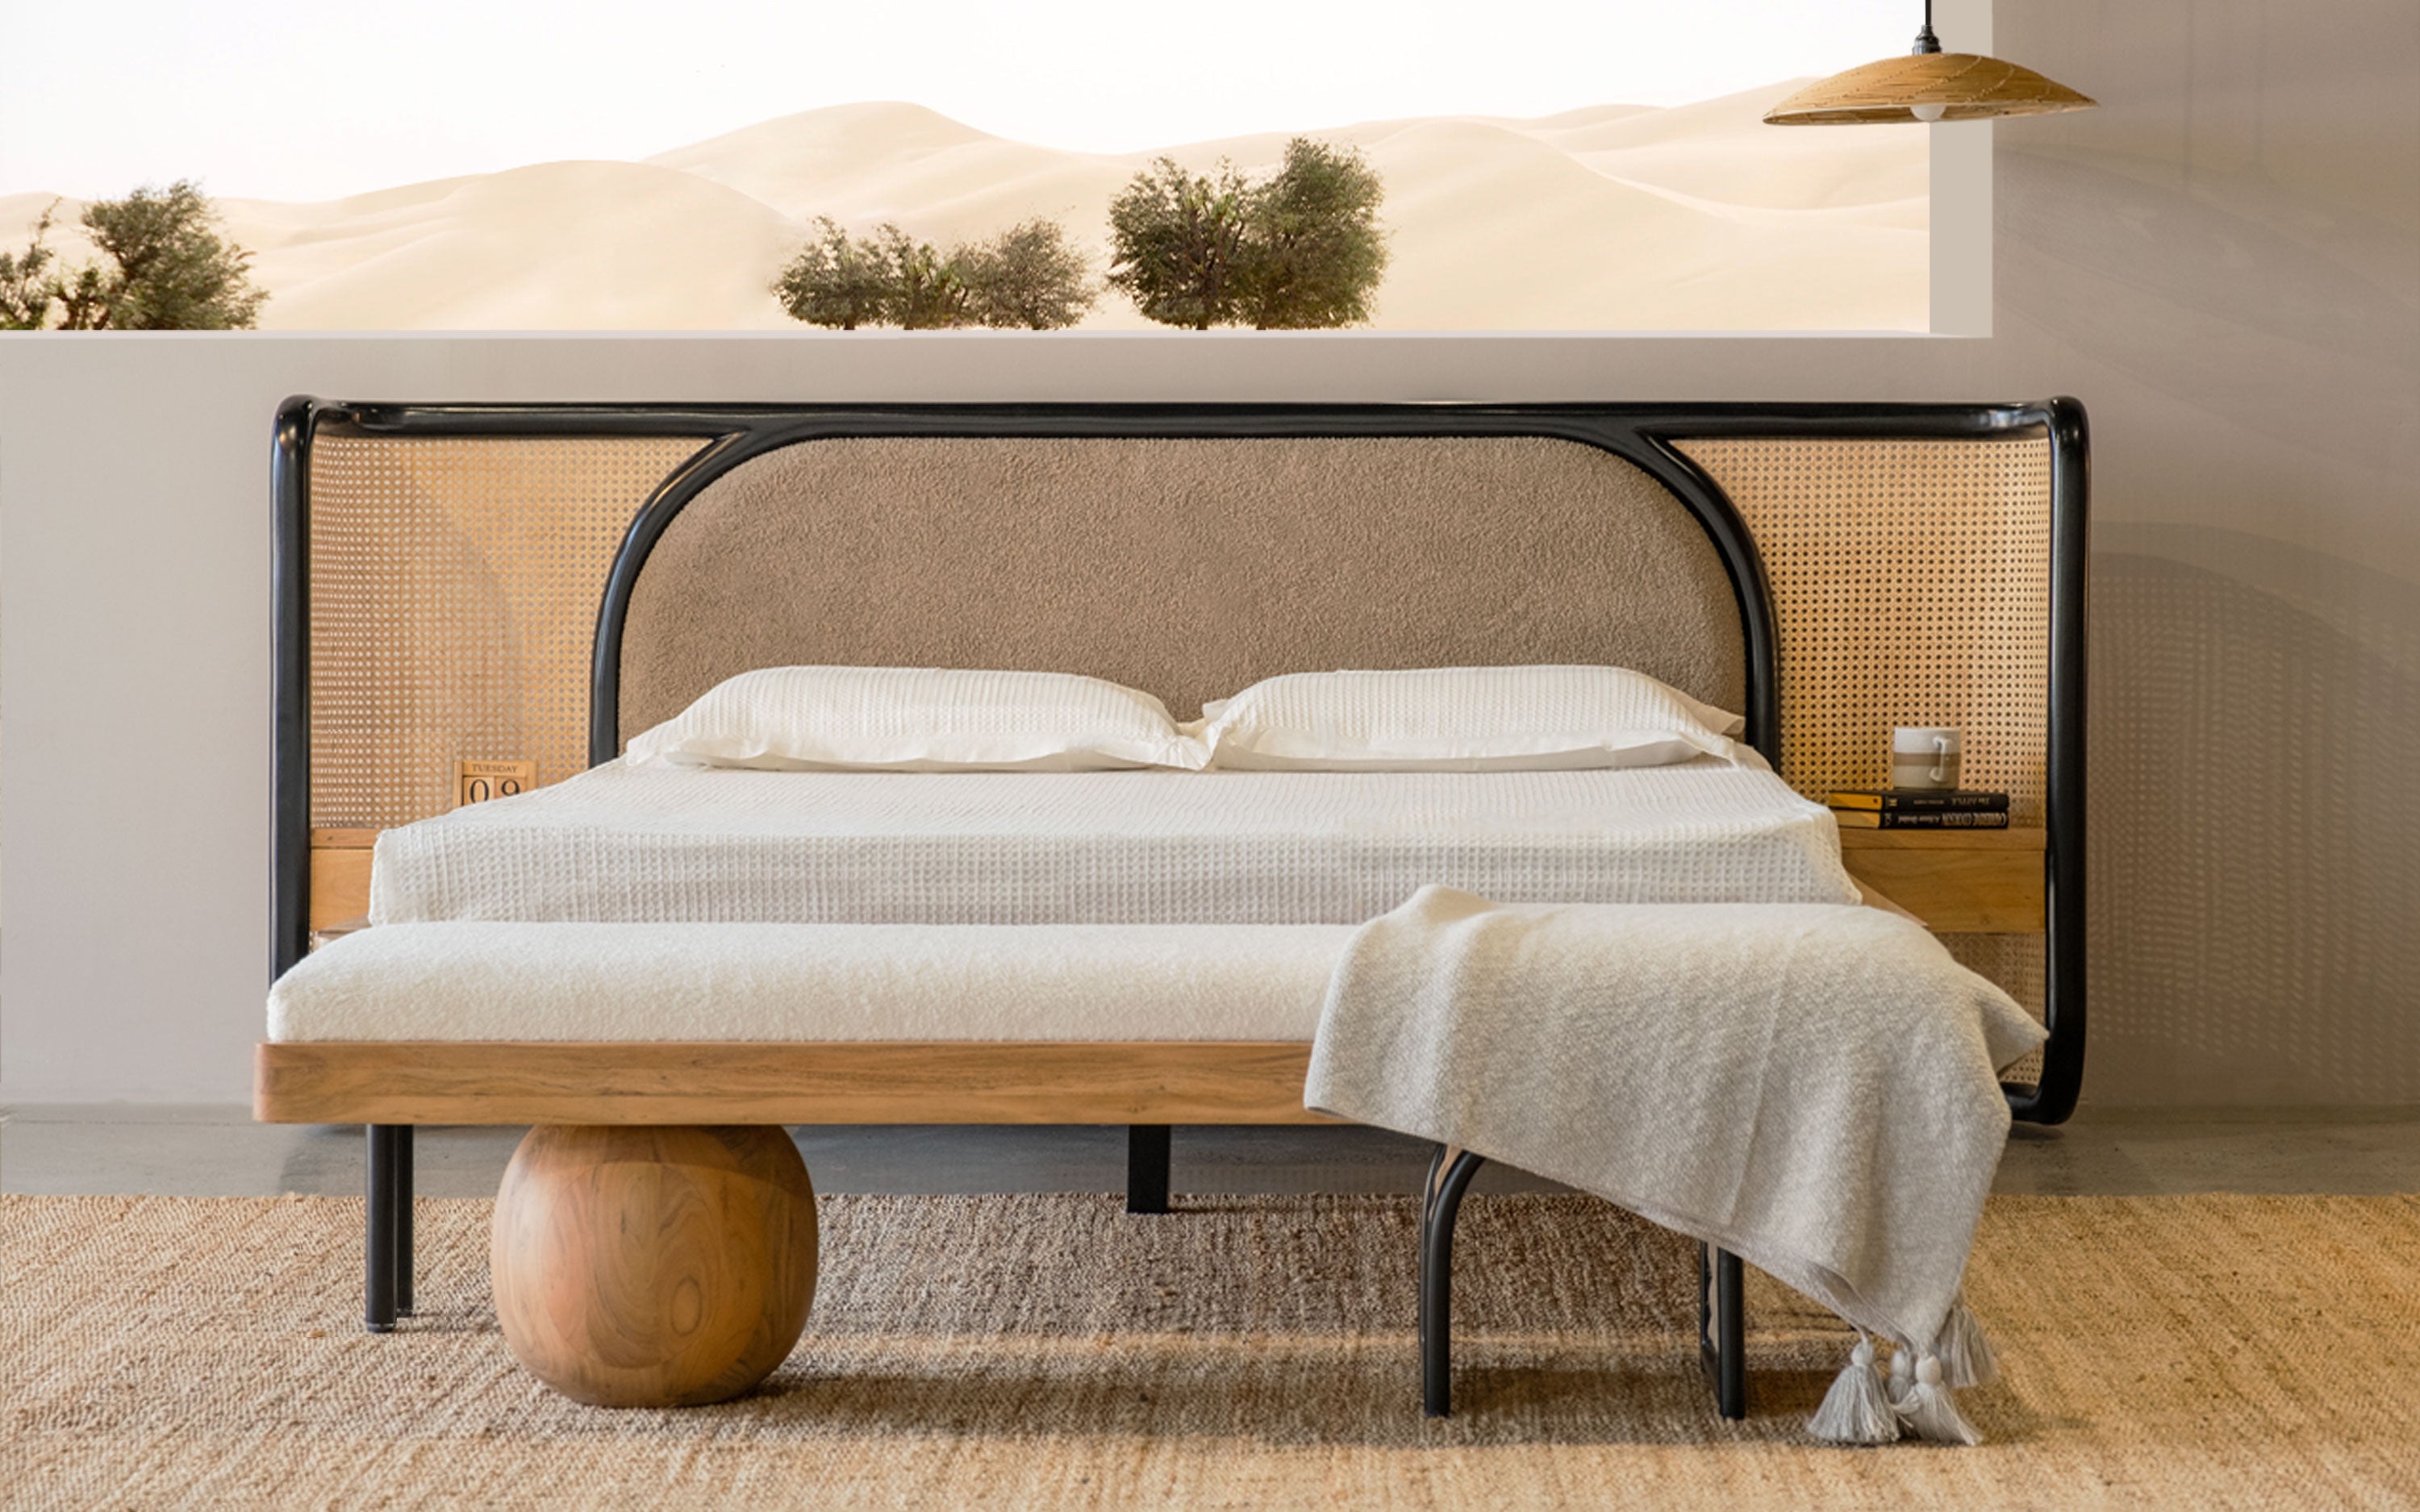 Andaman bed design furniture. Andaman simple wooden bed design. Andaman wooden double bed design. OT Home